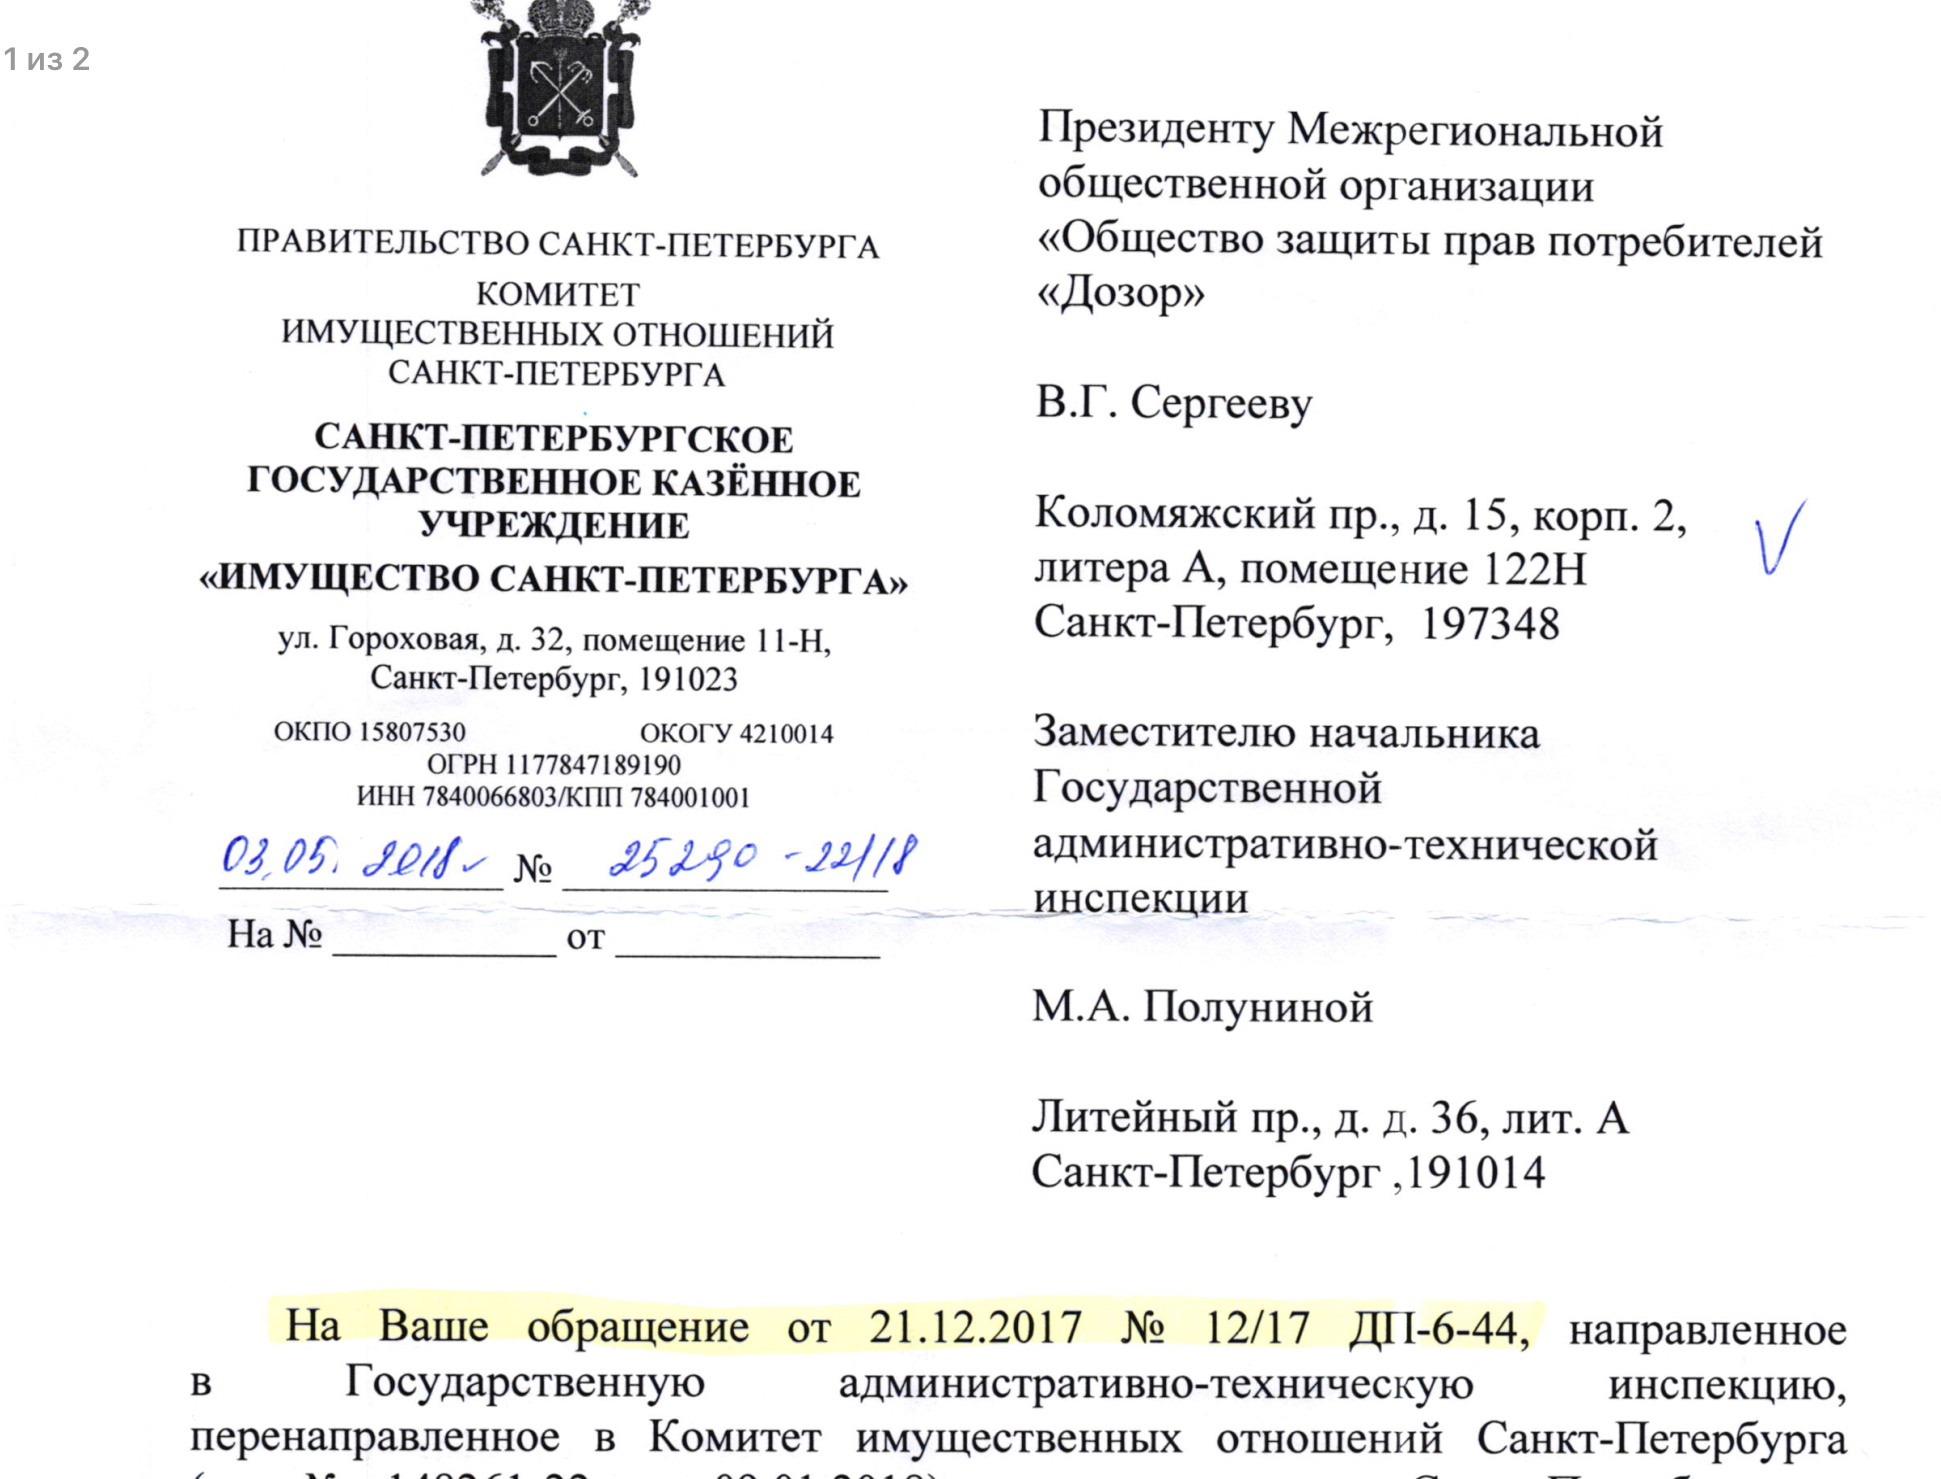 Ответ ГКУ “Имущество Санкт-Петербурга” на обращение по вопросу проведения проверки и принятию мер в отношении арендаторов земельного участков по адресам Испытателей 31 и Испытателей 51.